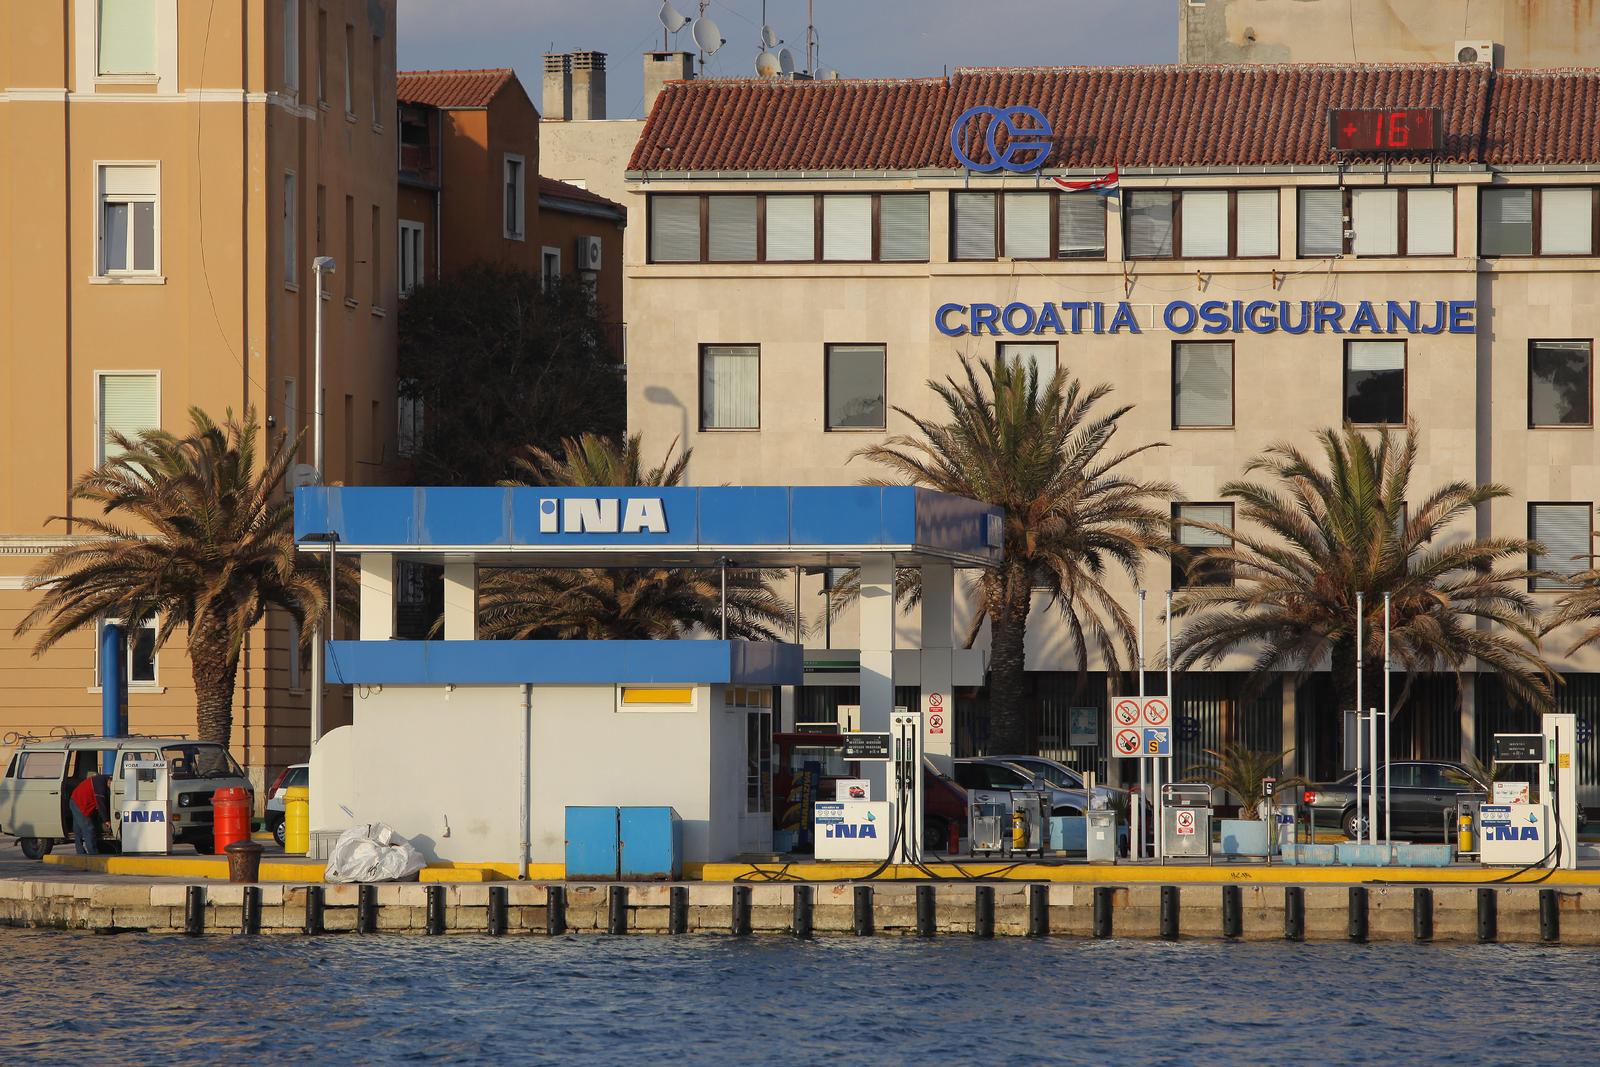 19.03.2012., Zadar - Inina benzinska postaja na Branimirovoj obali gorivom opskrbljuje i ribarske brodove.rPhoto: Filip Brala/PIXSELL